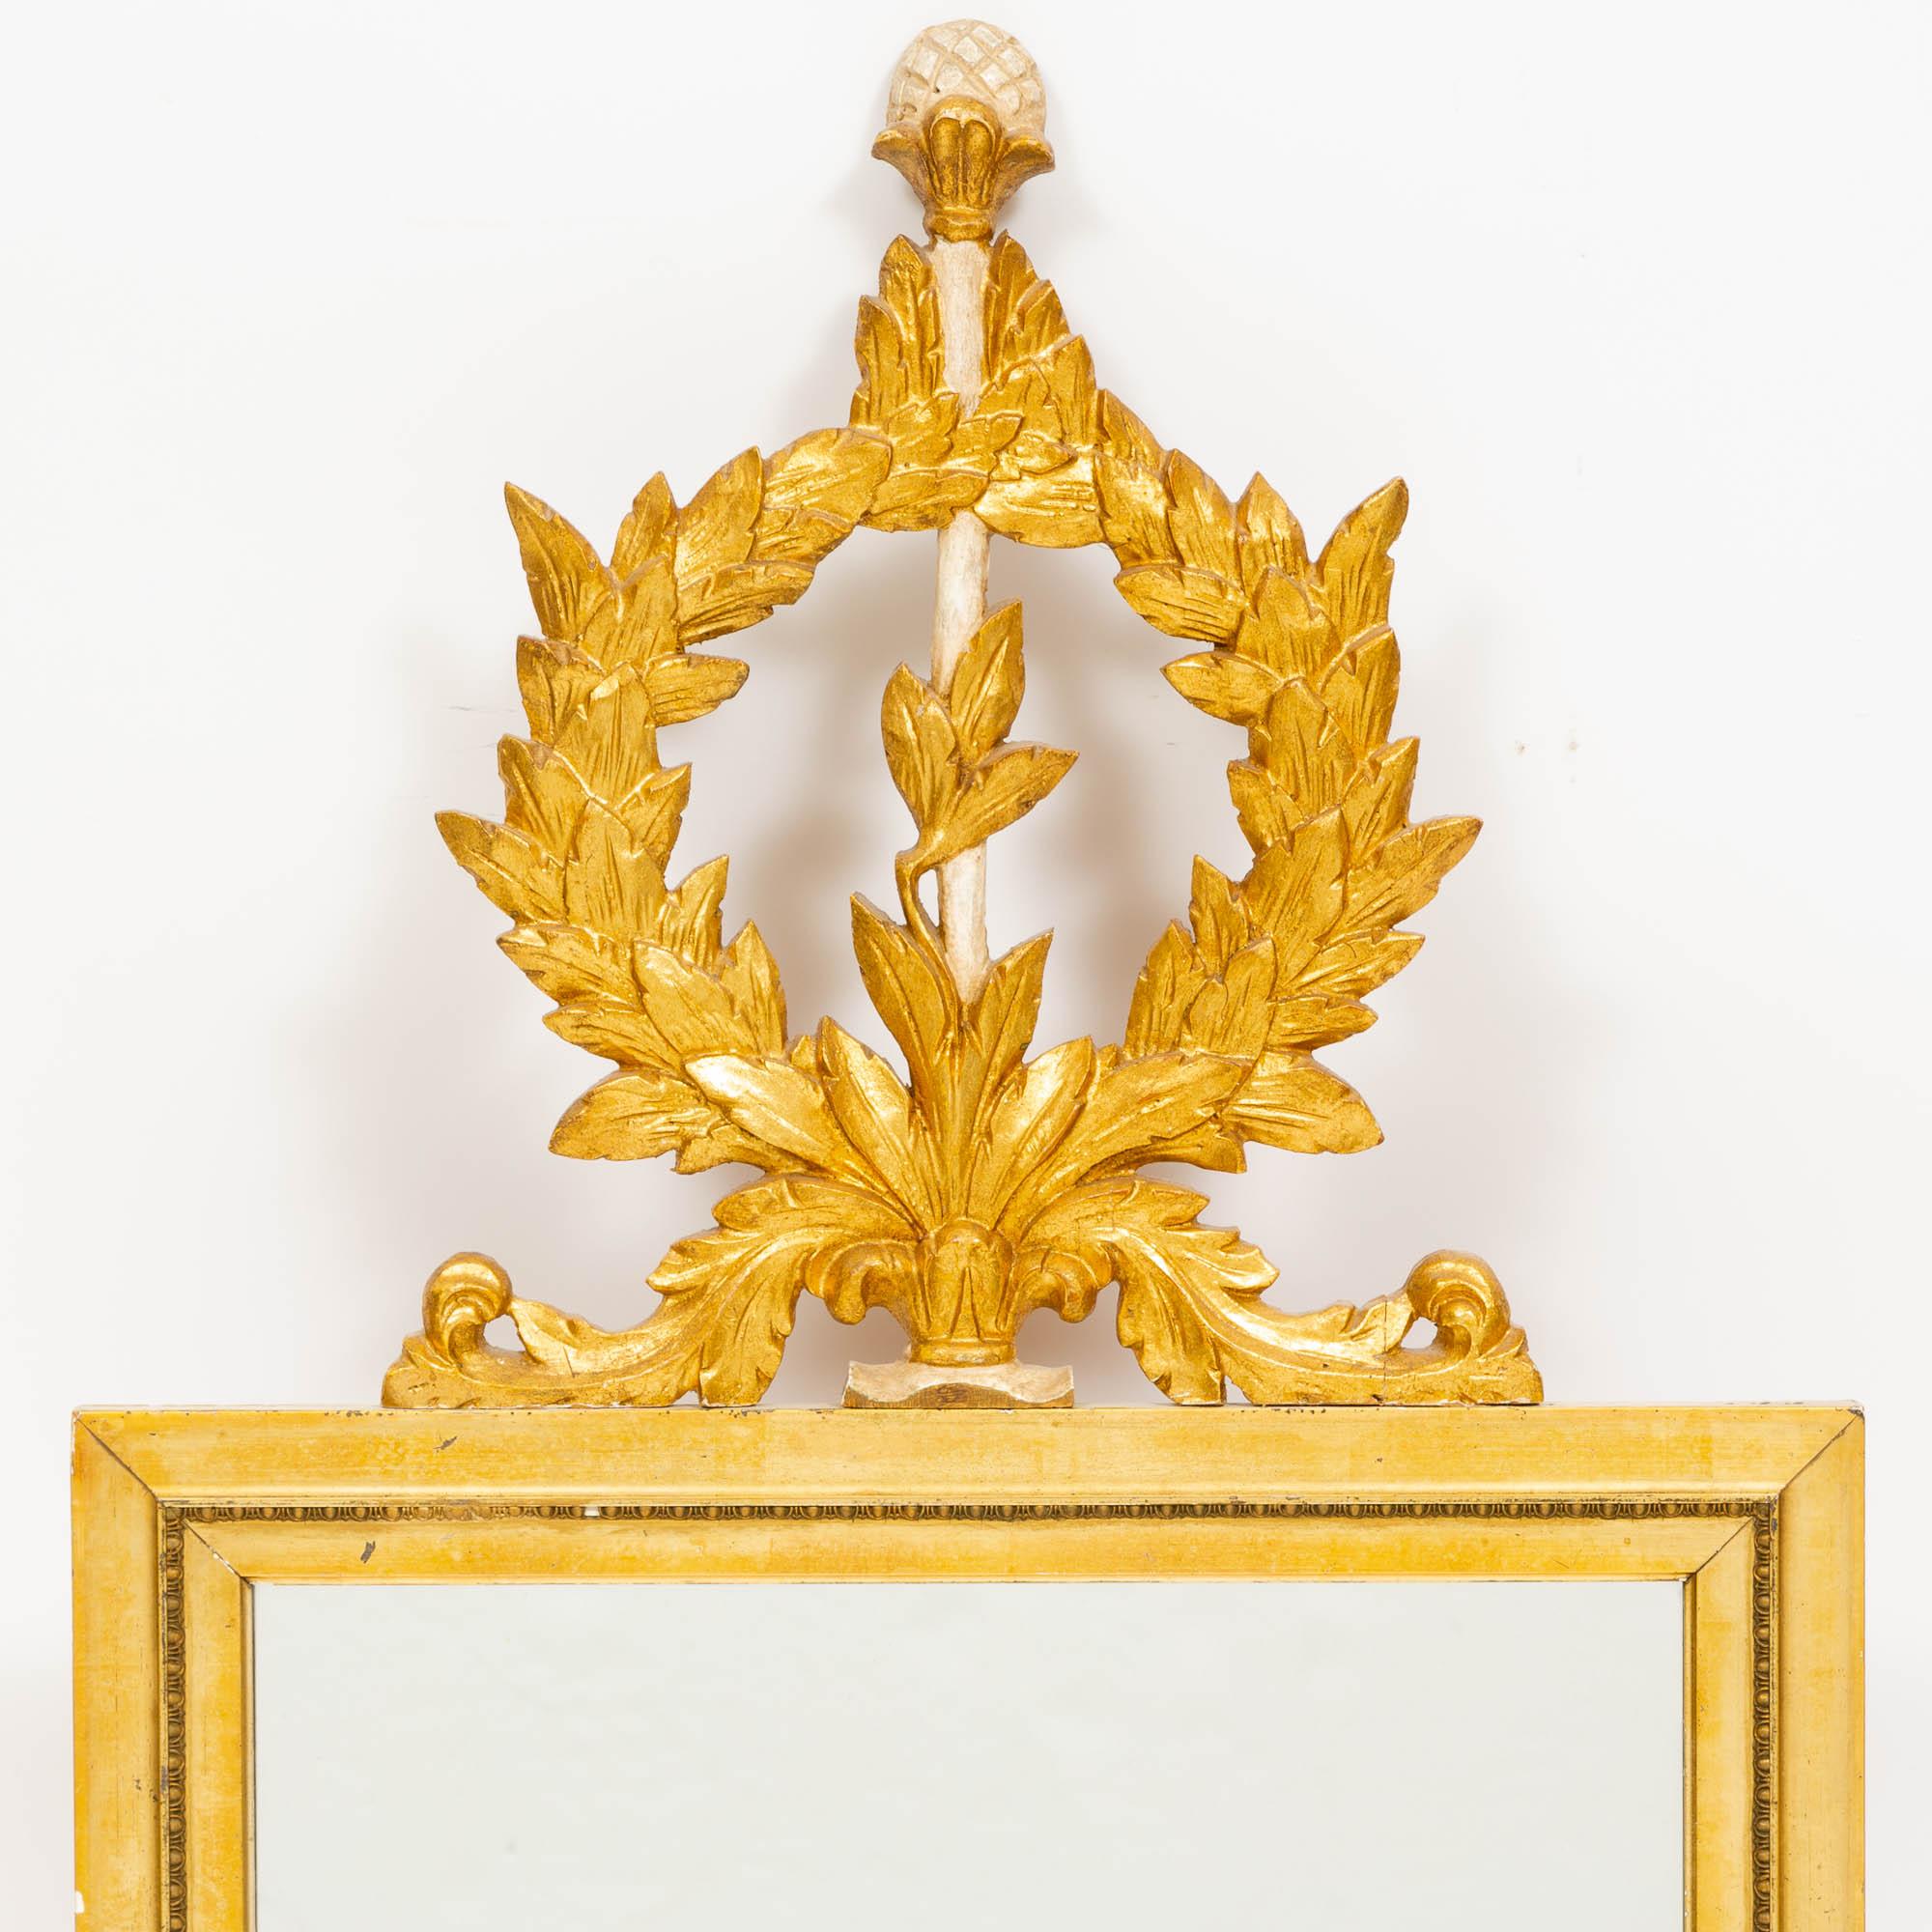 Introduisez une élégance intemporelle dans votre espace avec notre Exquisite Antique Italian Hand-Paintted Giltwood Frame Louis XVI Style Wall Mirror. Cette pièce captivante est un témoignage de l'art et de l'artisanat du passé, mettant en valeur